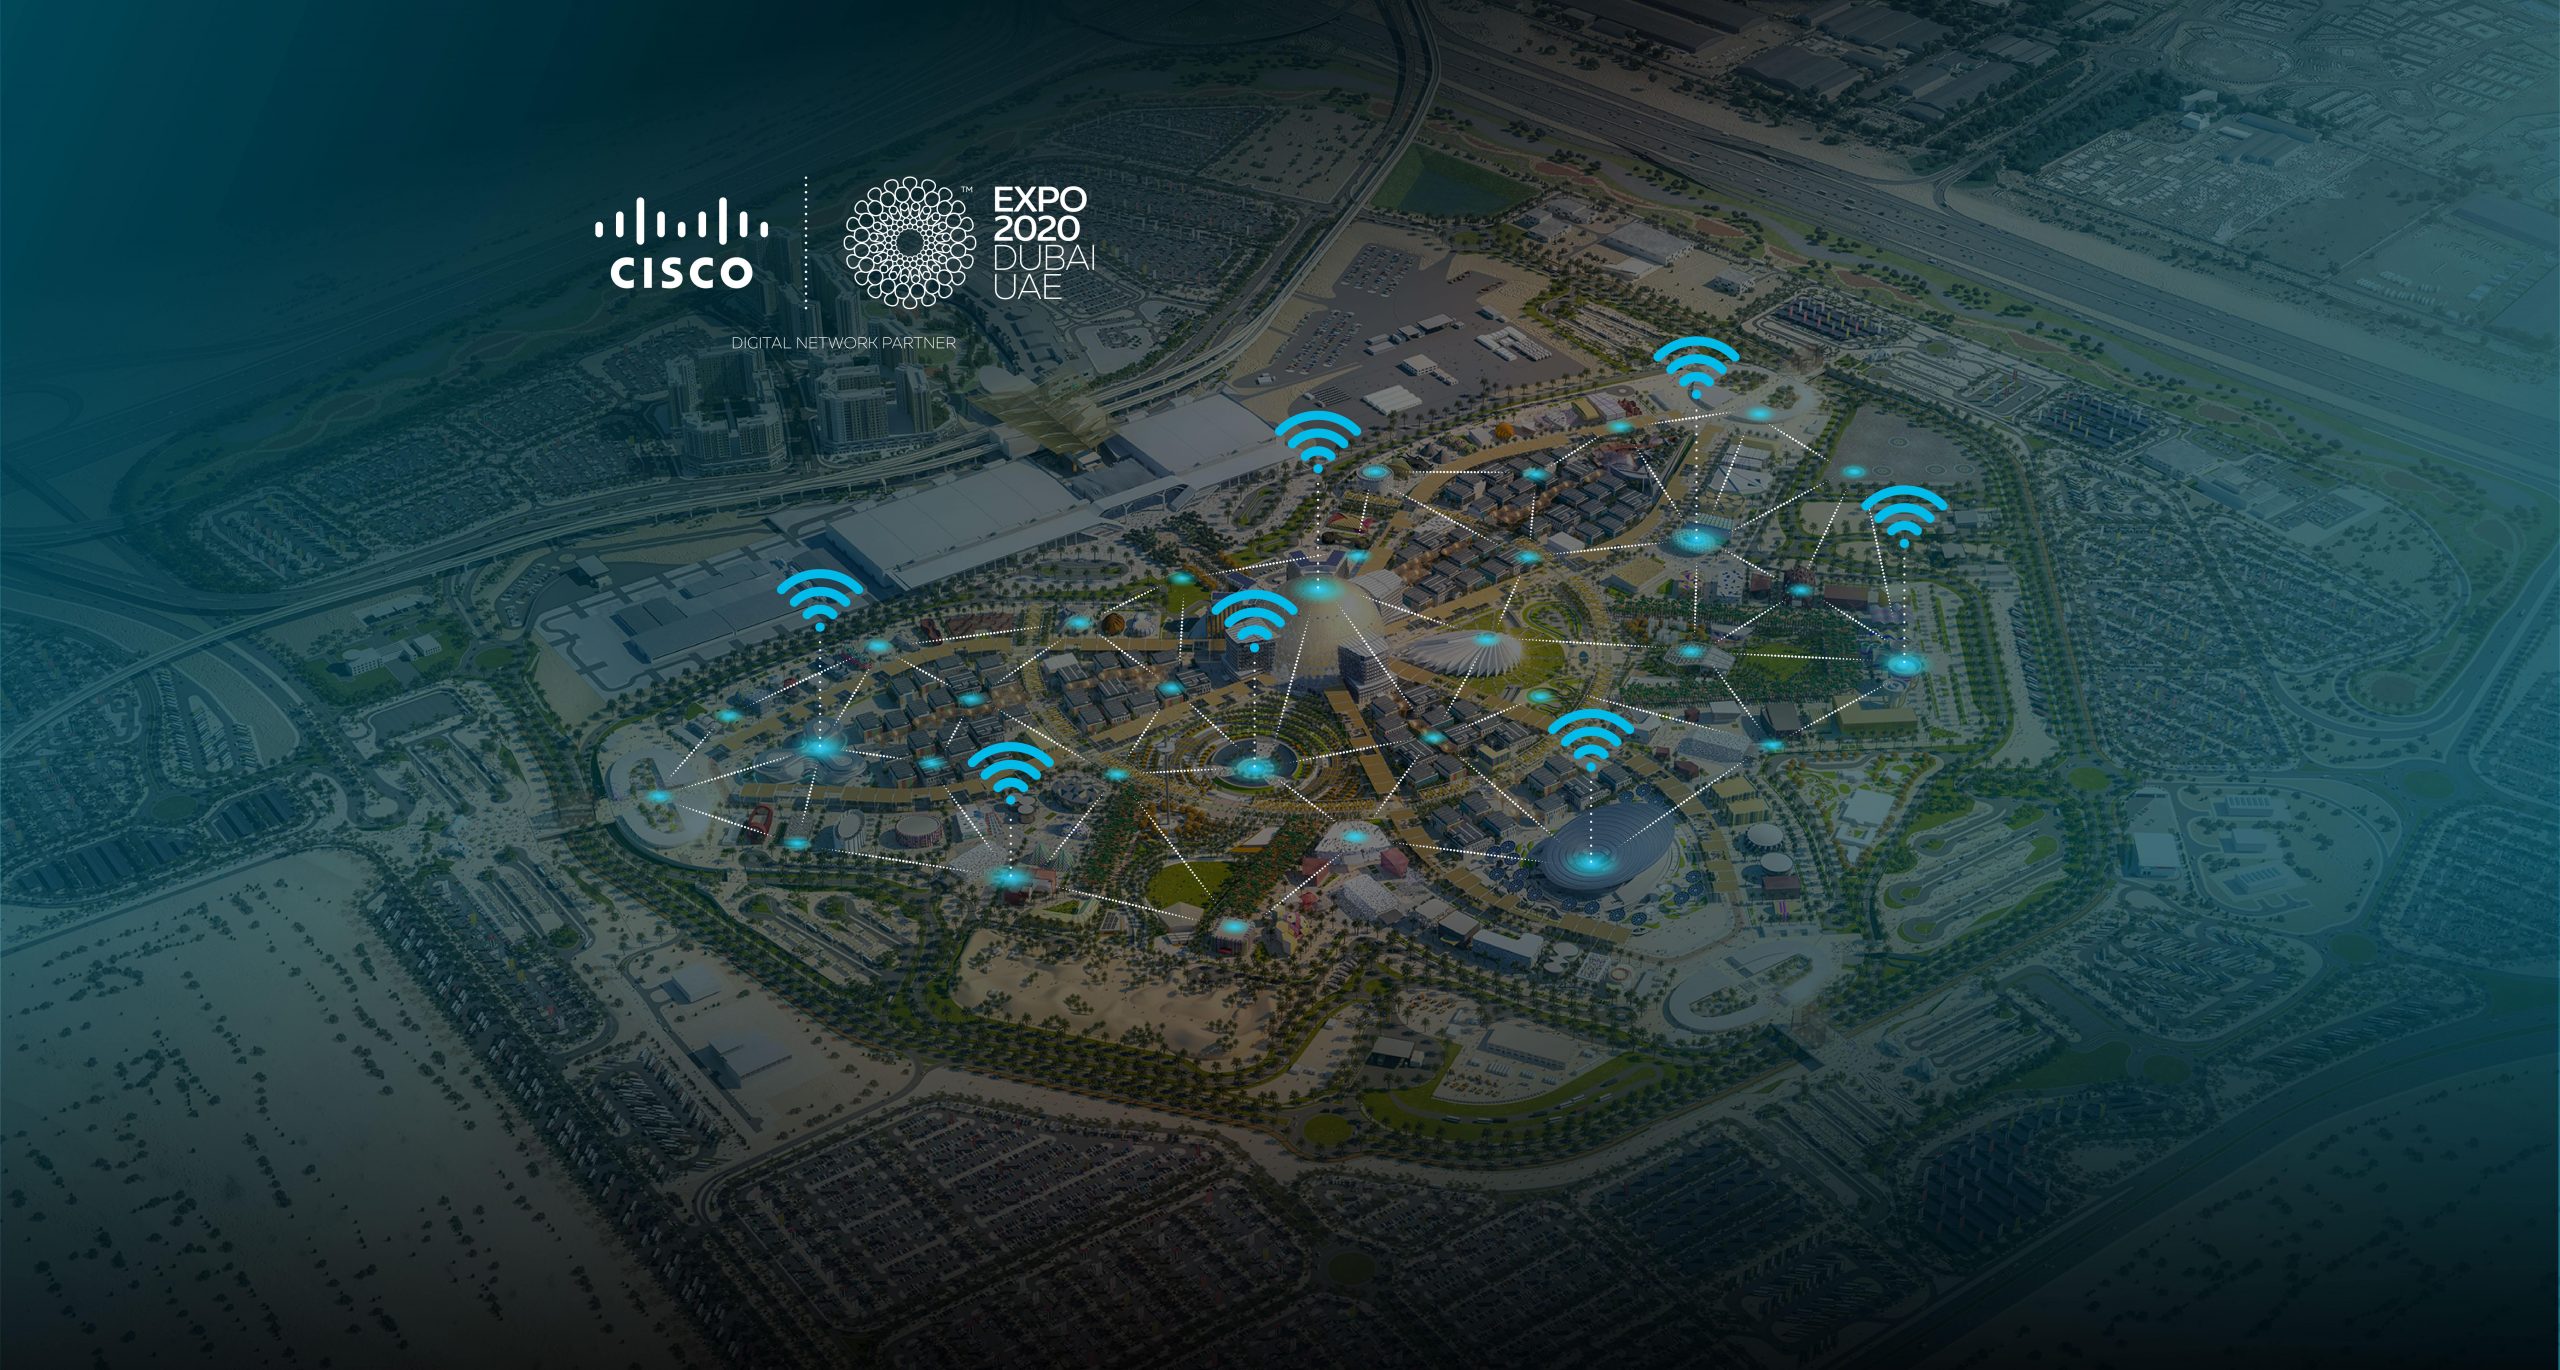 100 يوم تفصلنا عن إكسبو 2020 دبي وسيسكو تؤكد جاهزيتها لإثراء الاتصالات البشرية والرقمية